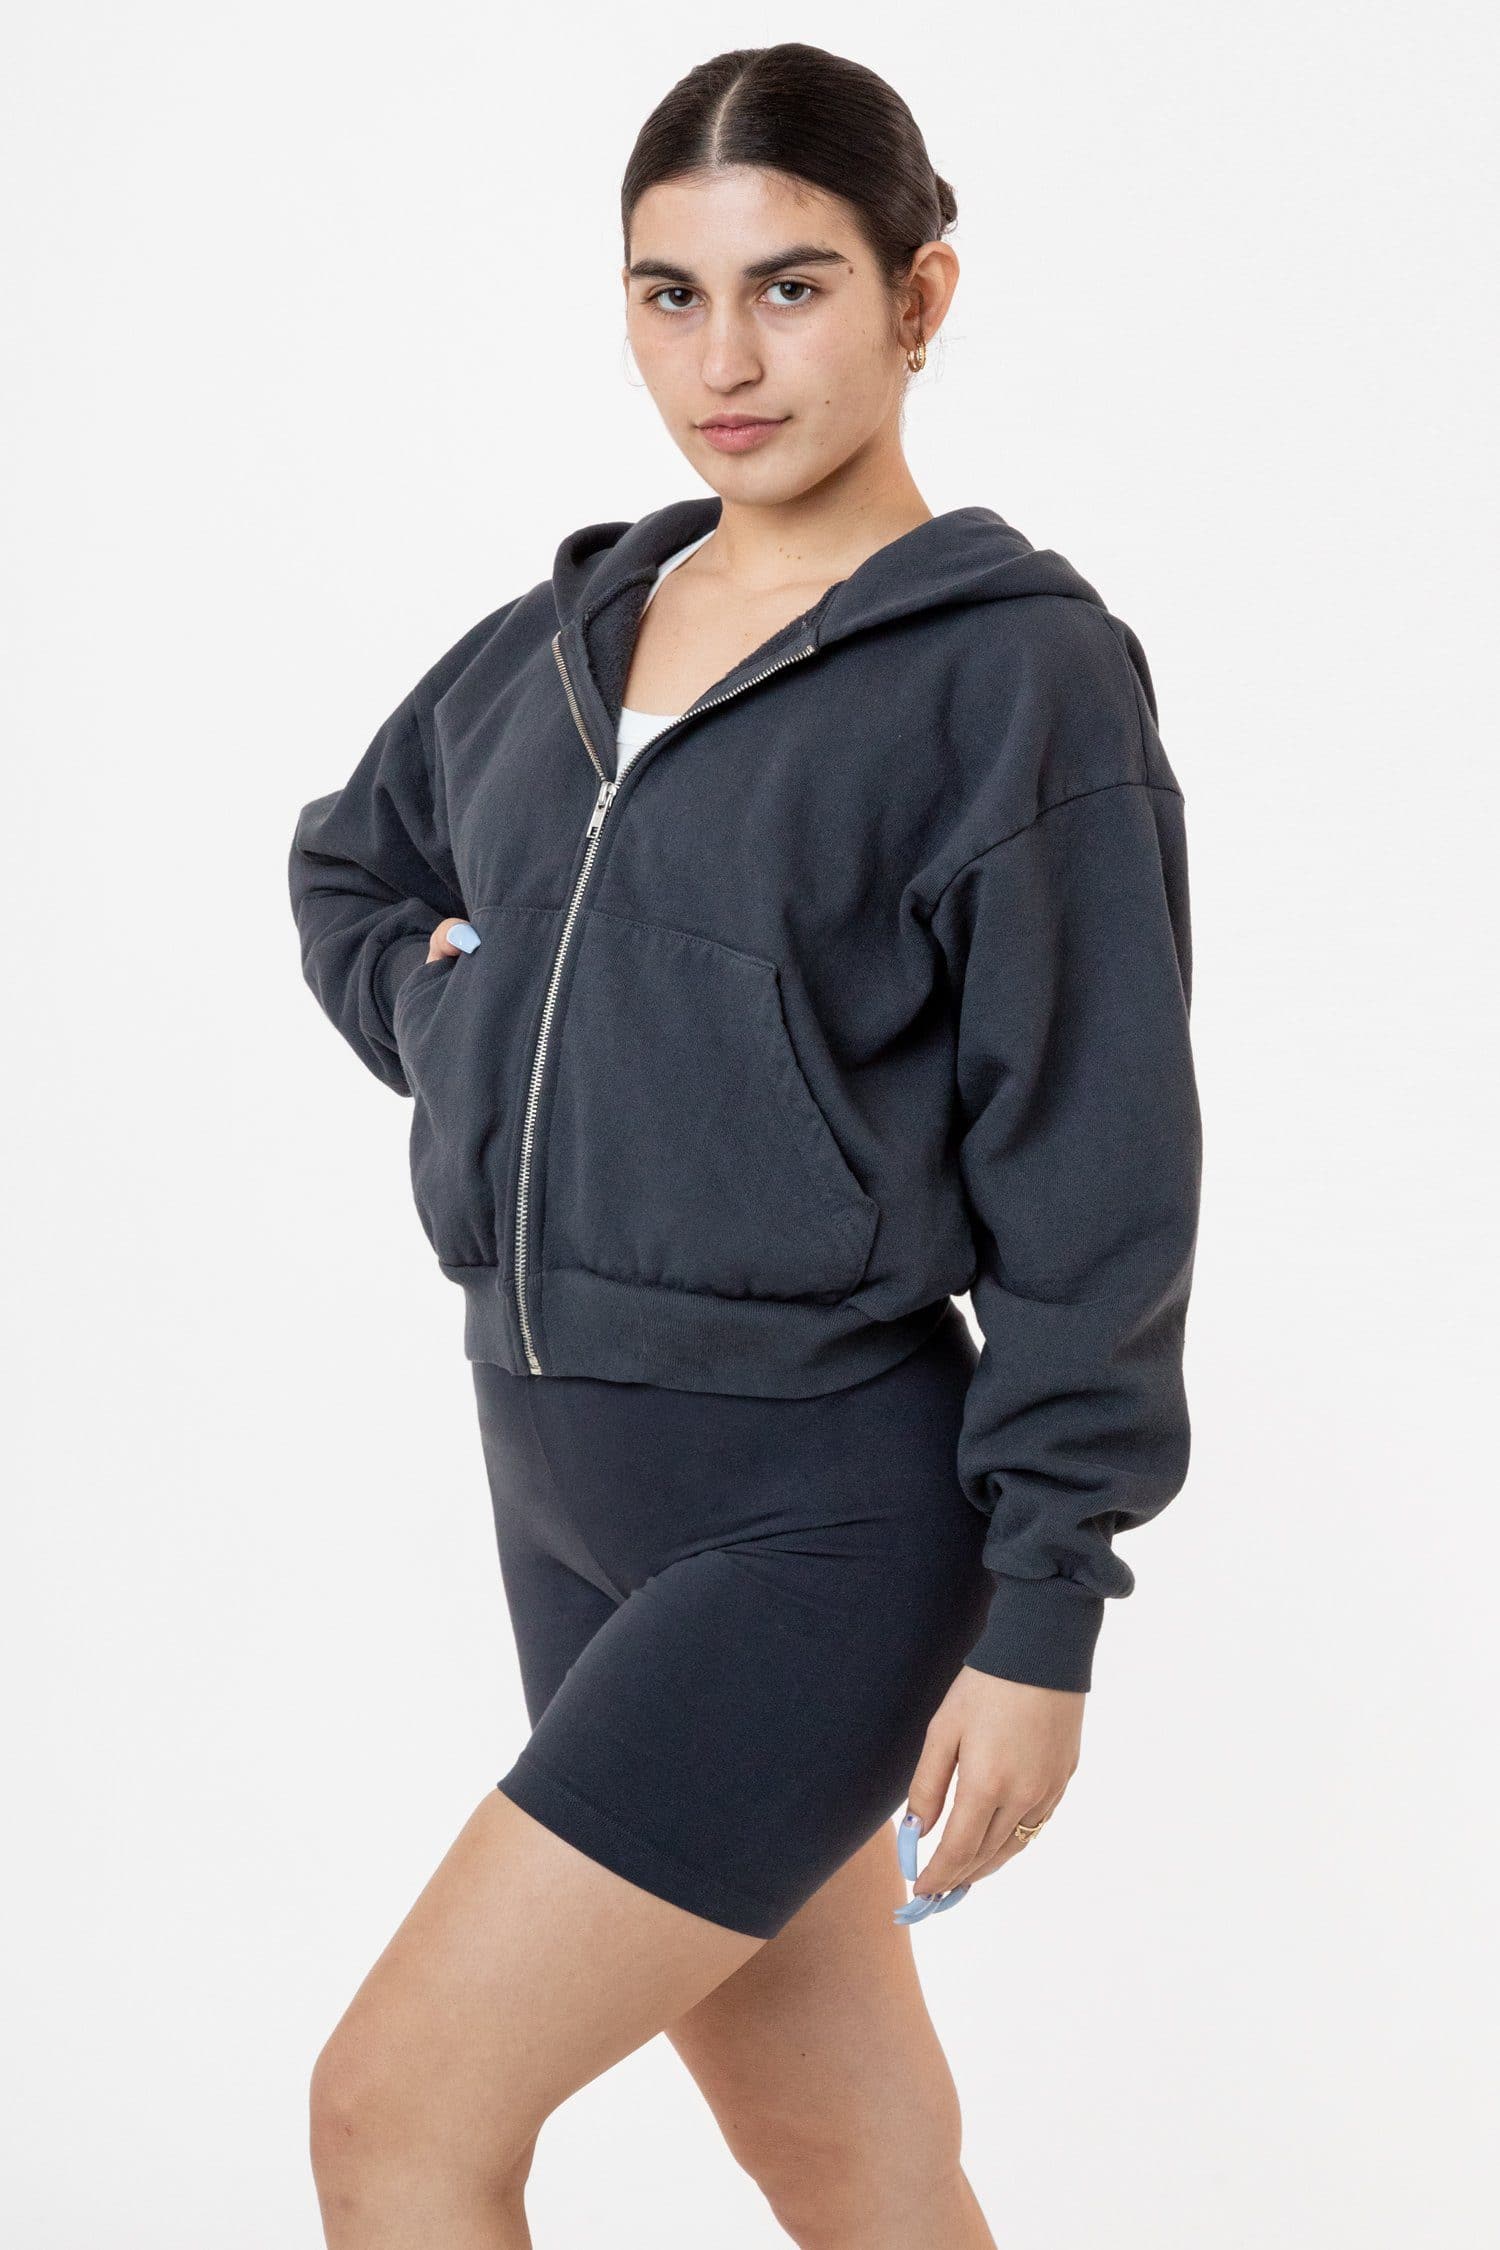 Los Angeles Apparel | Heavy Fleece Cropped Zip-Up Hoodie (Garment Dye) for Women in Navy, Size S/M